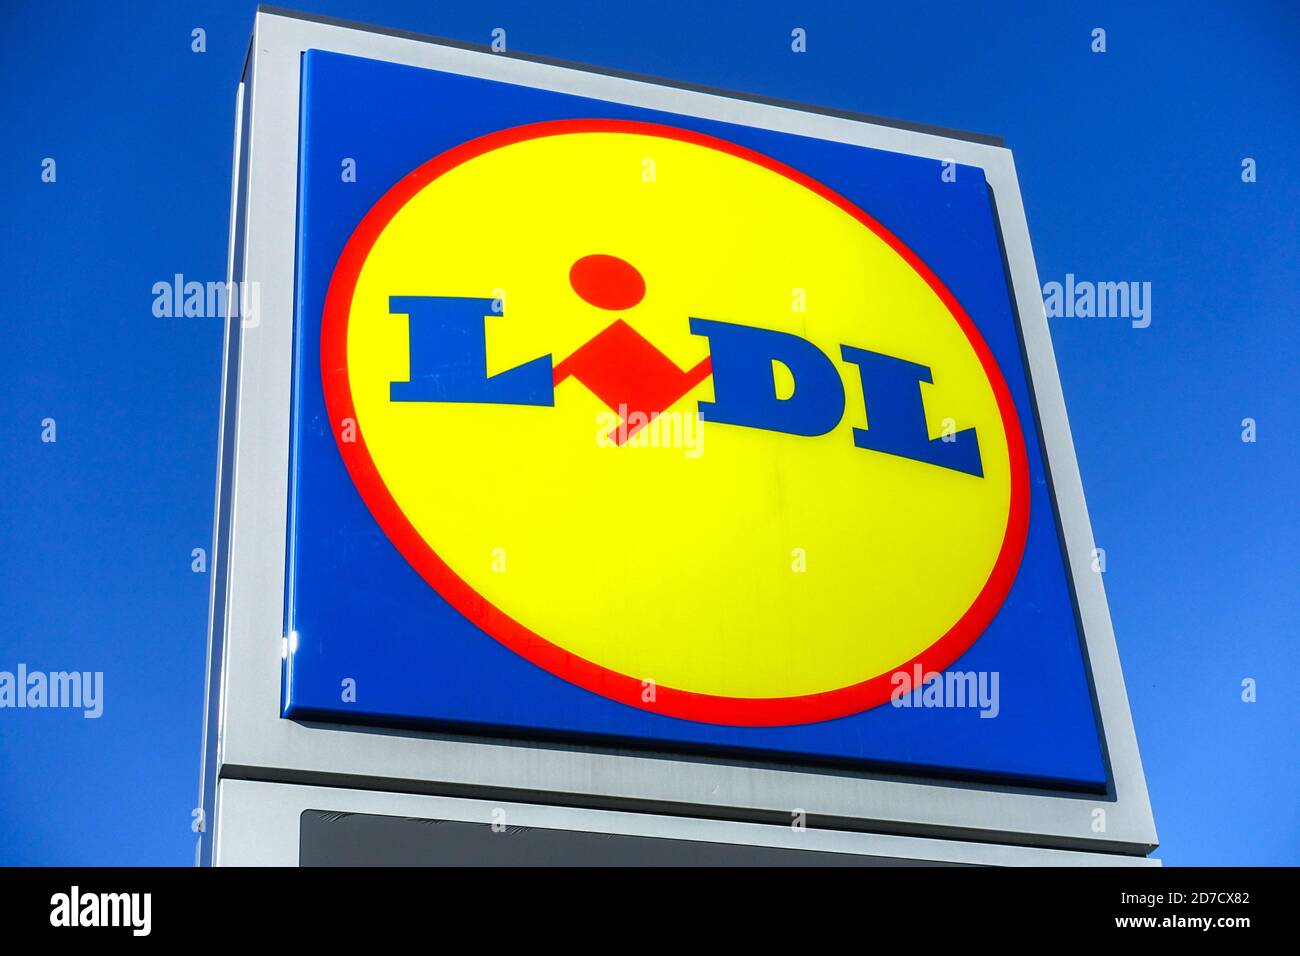 Lidl logo Czech Republic Stock Photo - Alamy